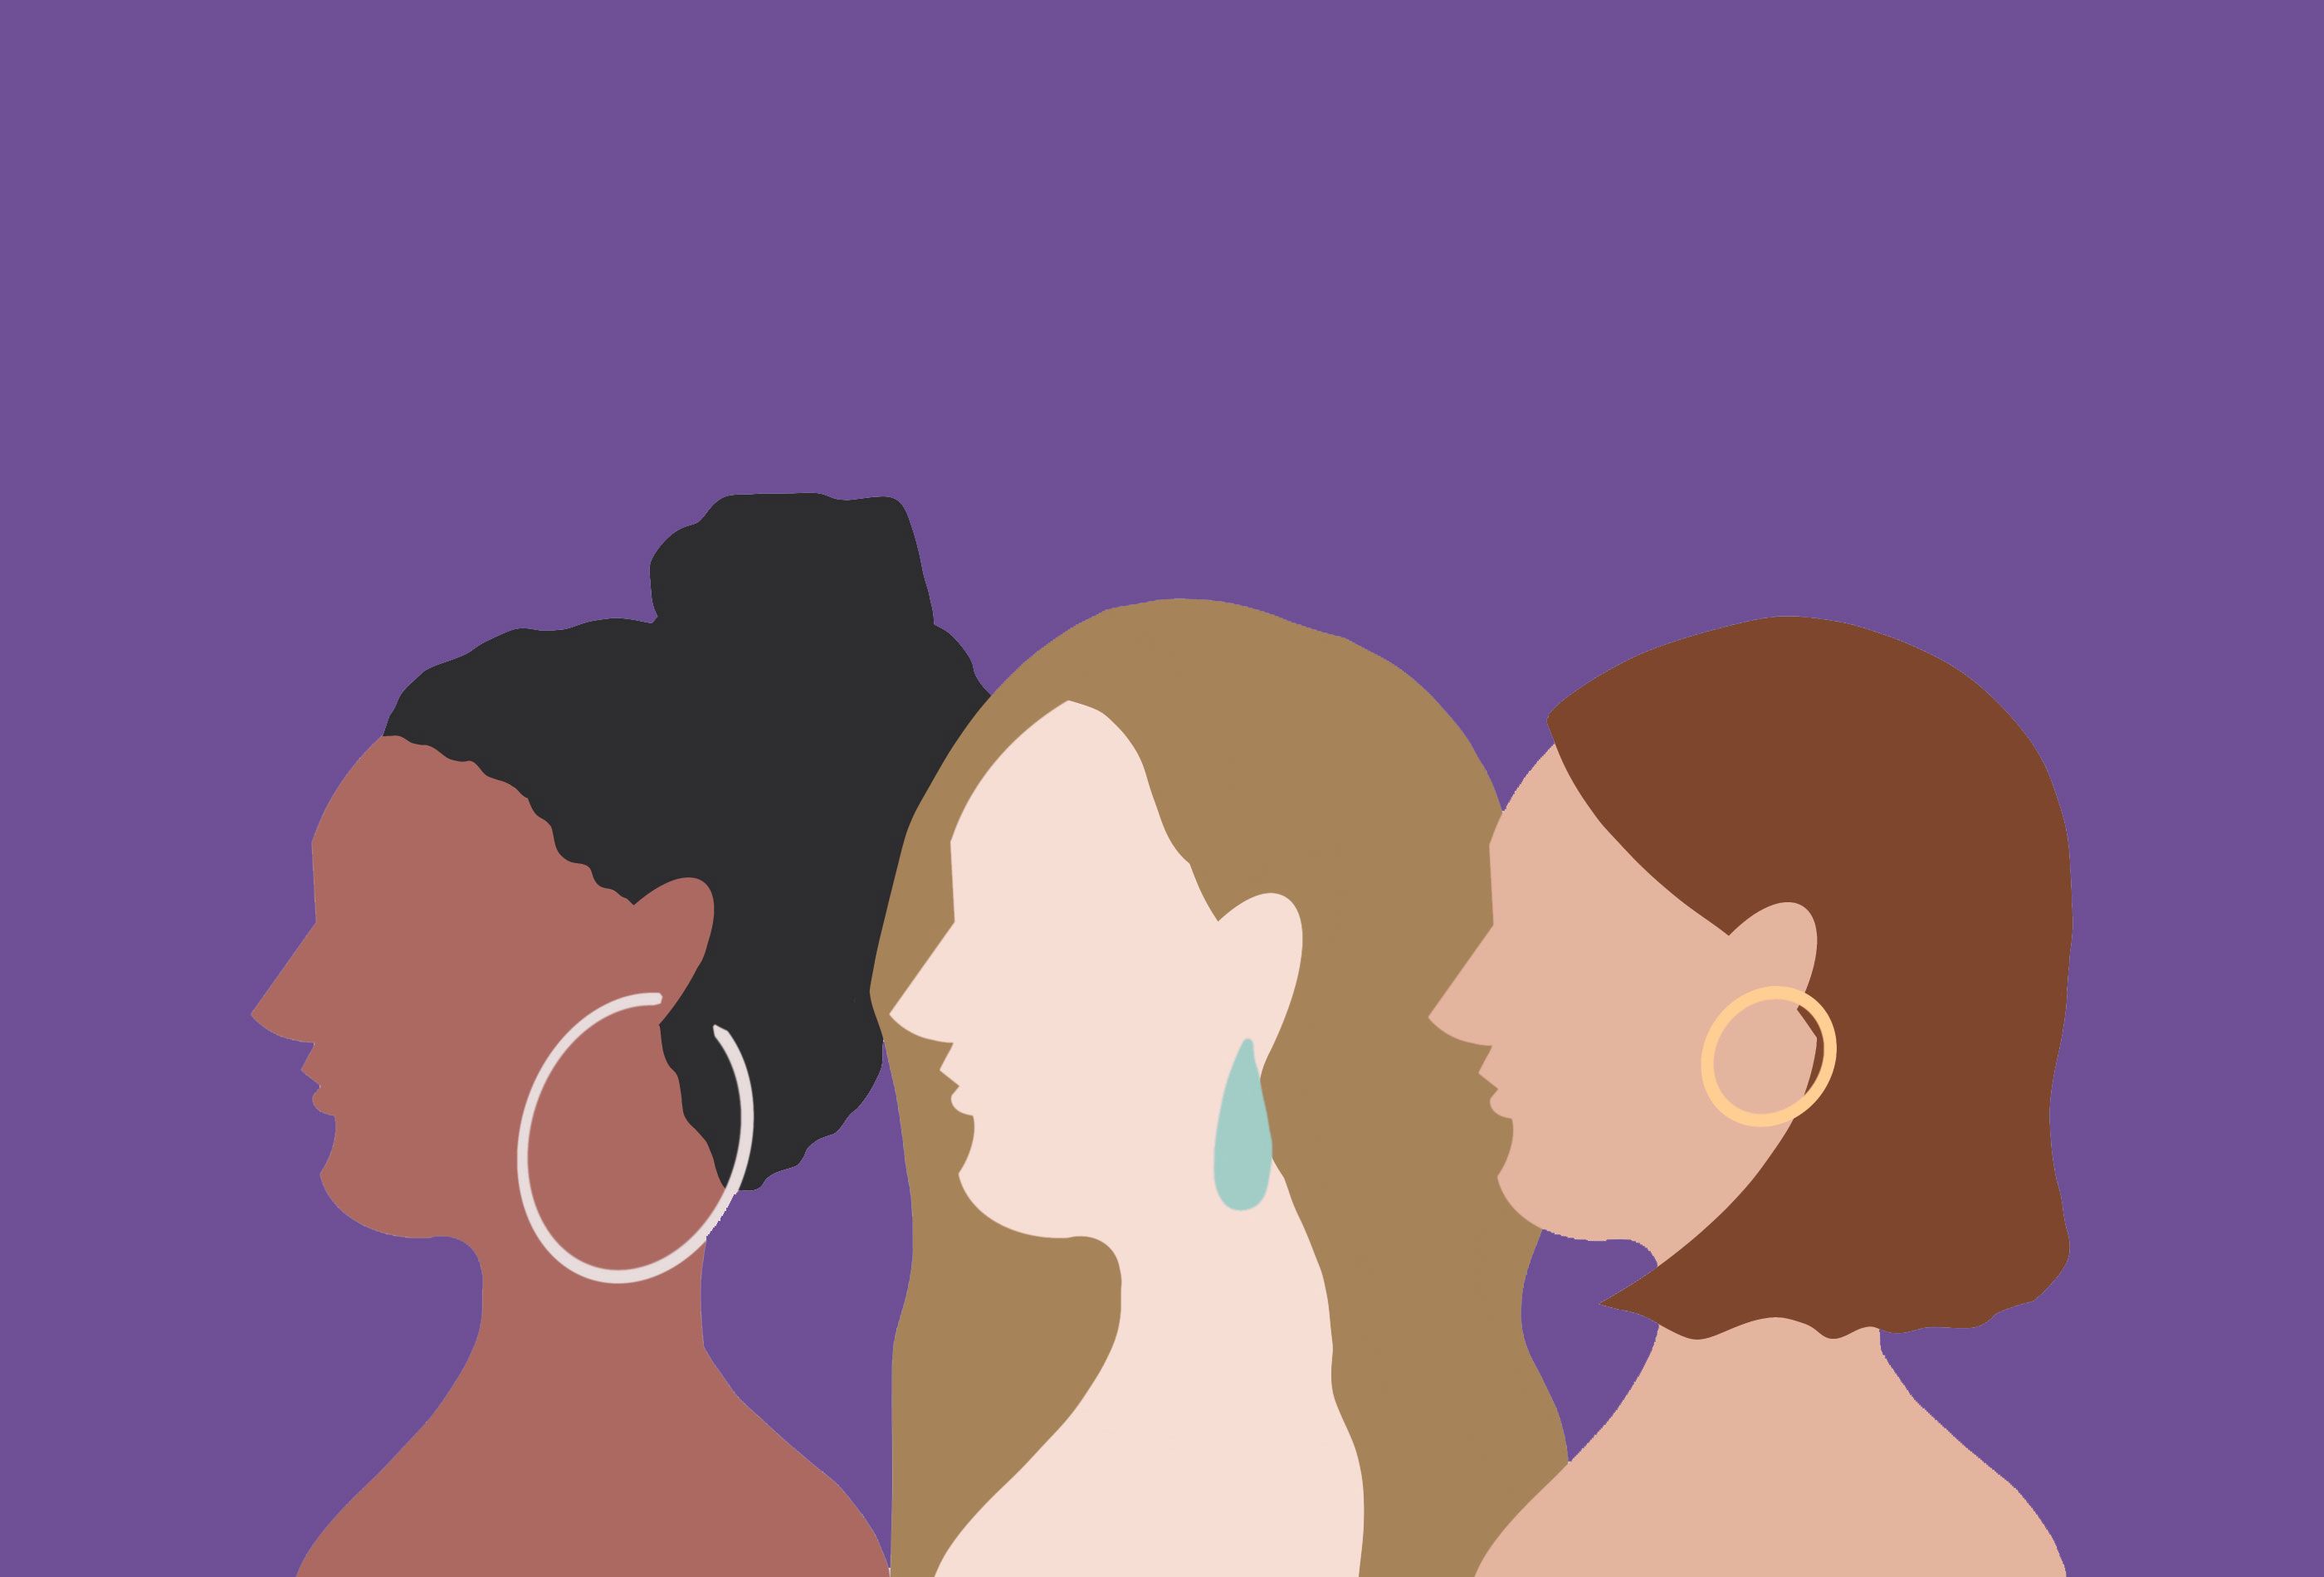 Por qué el color violeta / morado representa el día de la mujer?